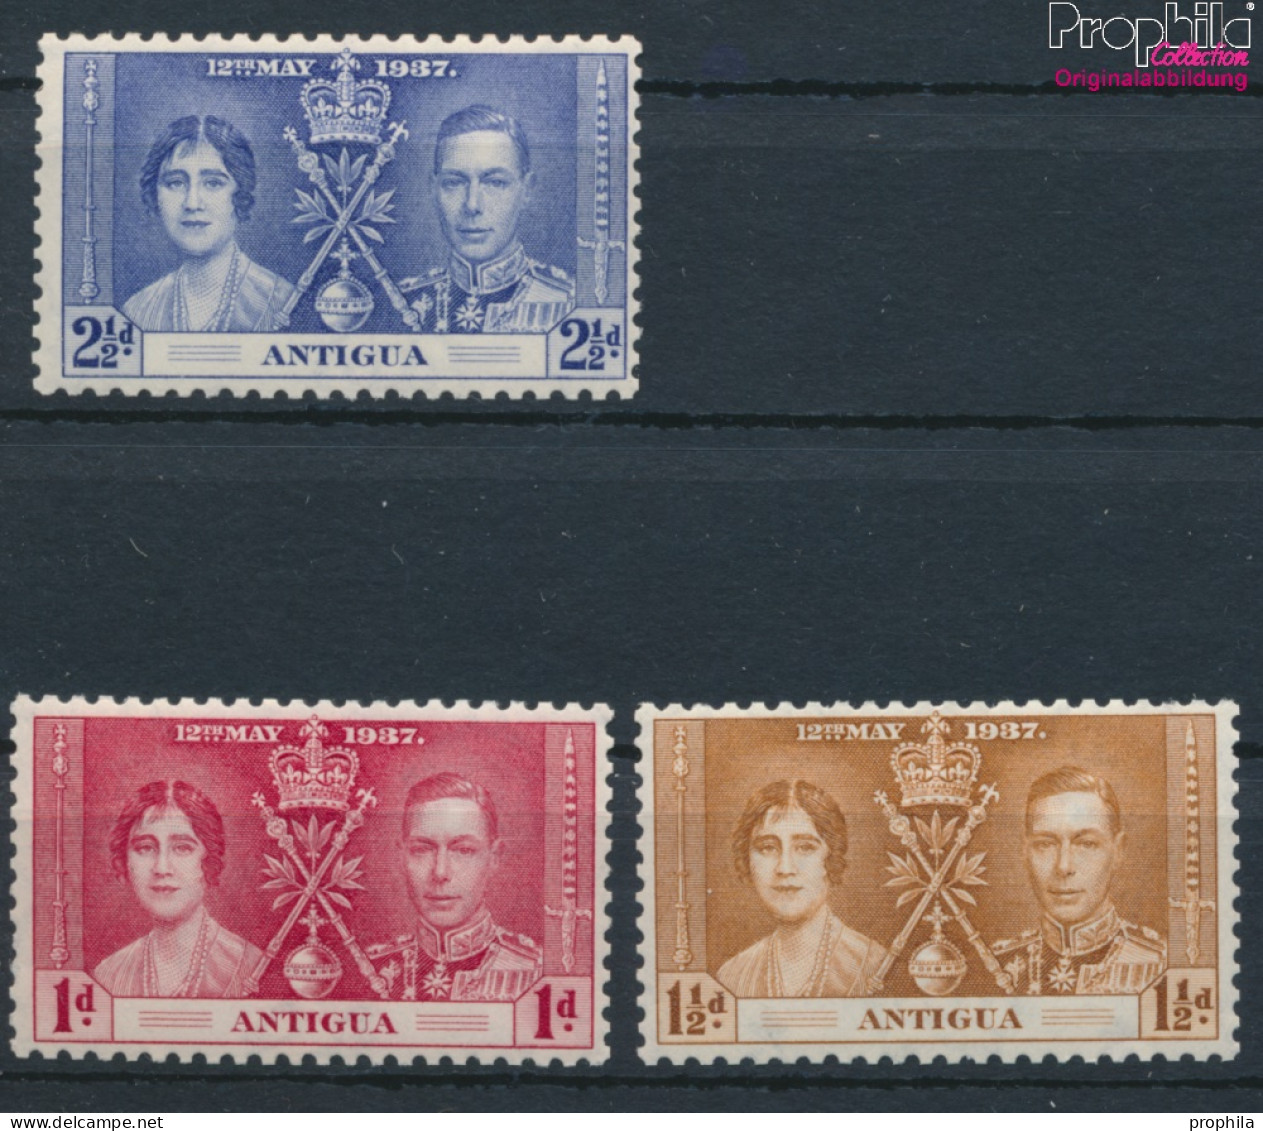 Antigua Postfrisch Krönung 1937 Krönung  (10368538 - 1858-1960 Kronenkolonie